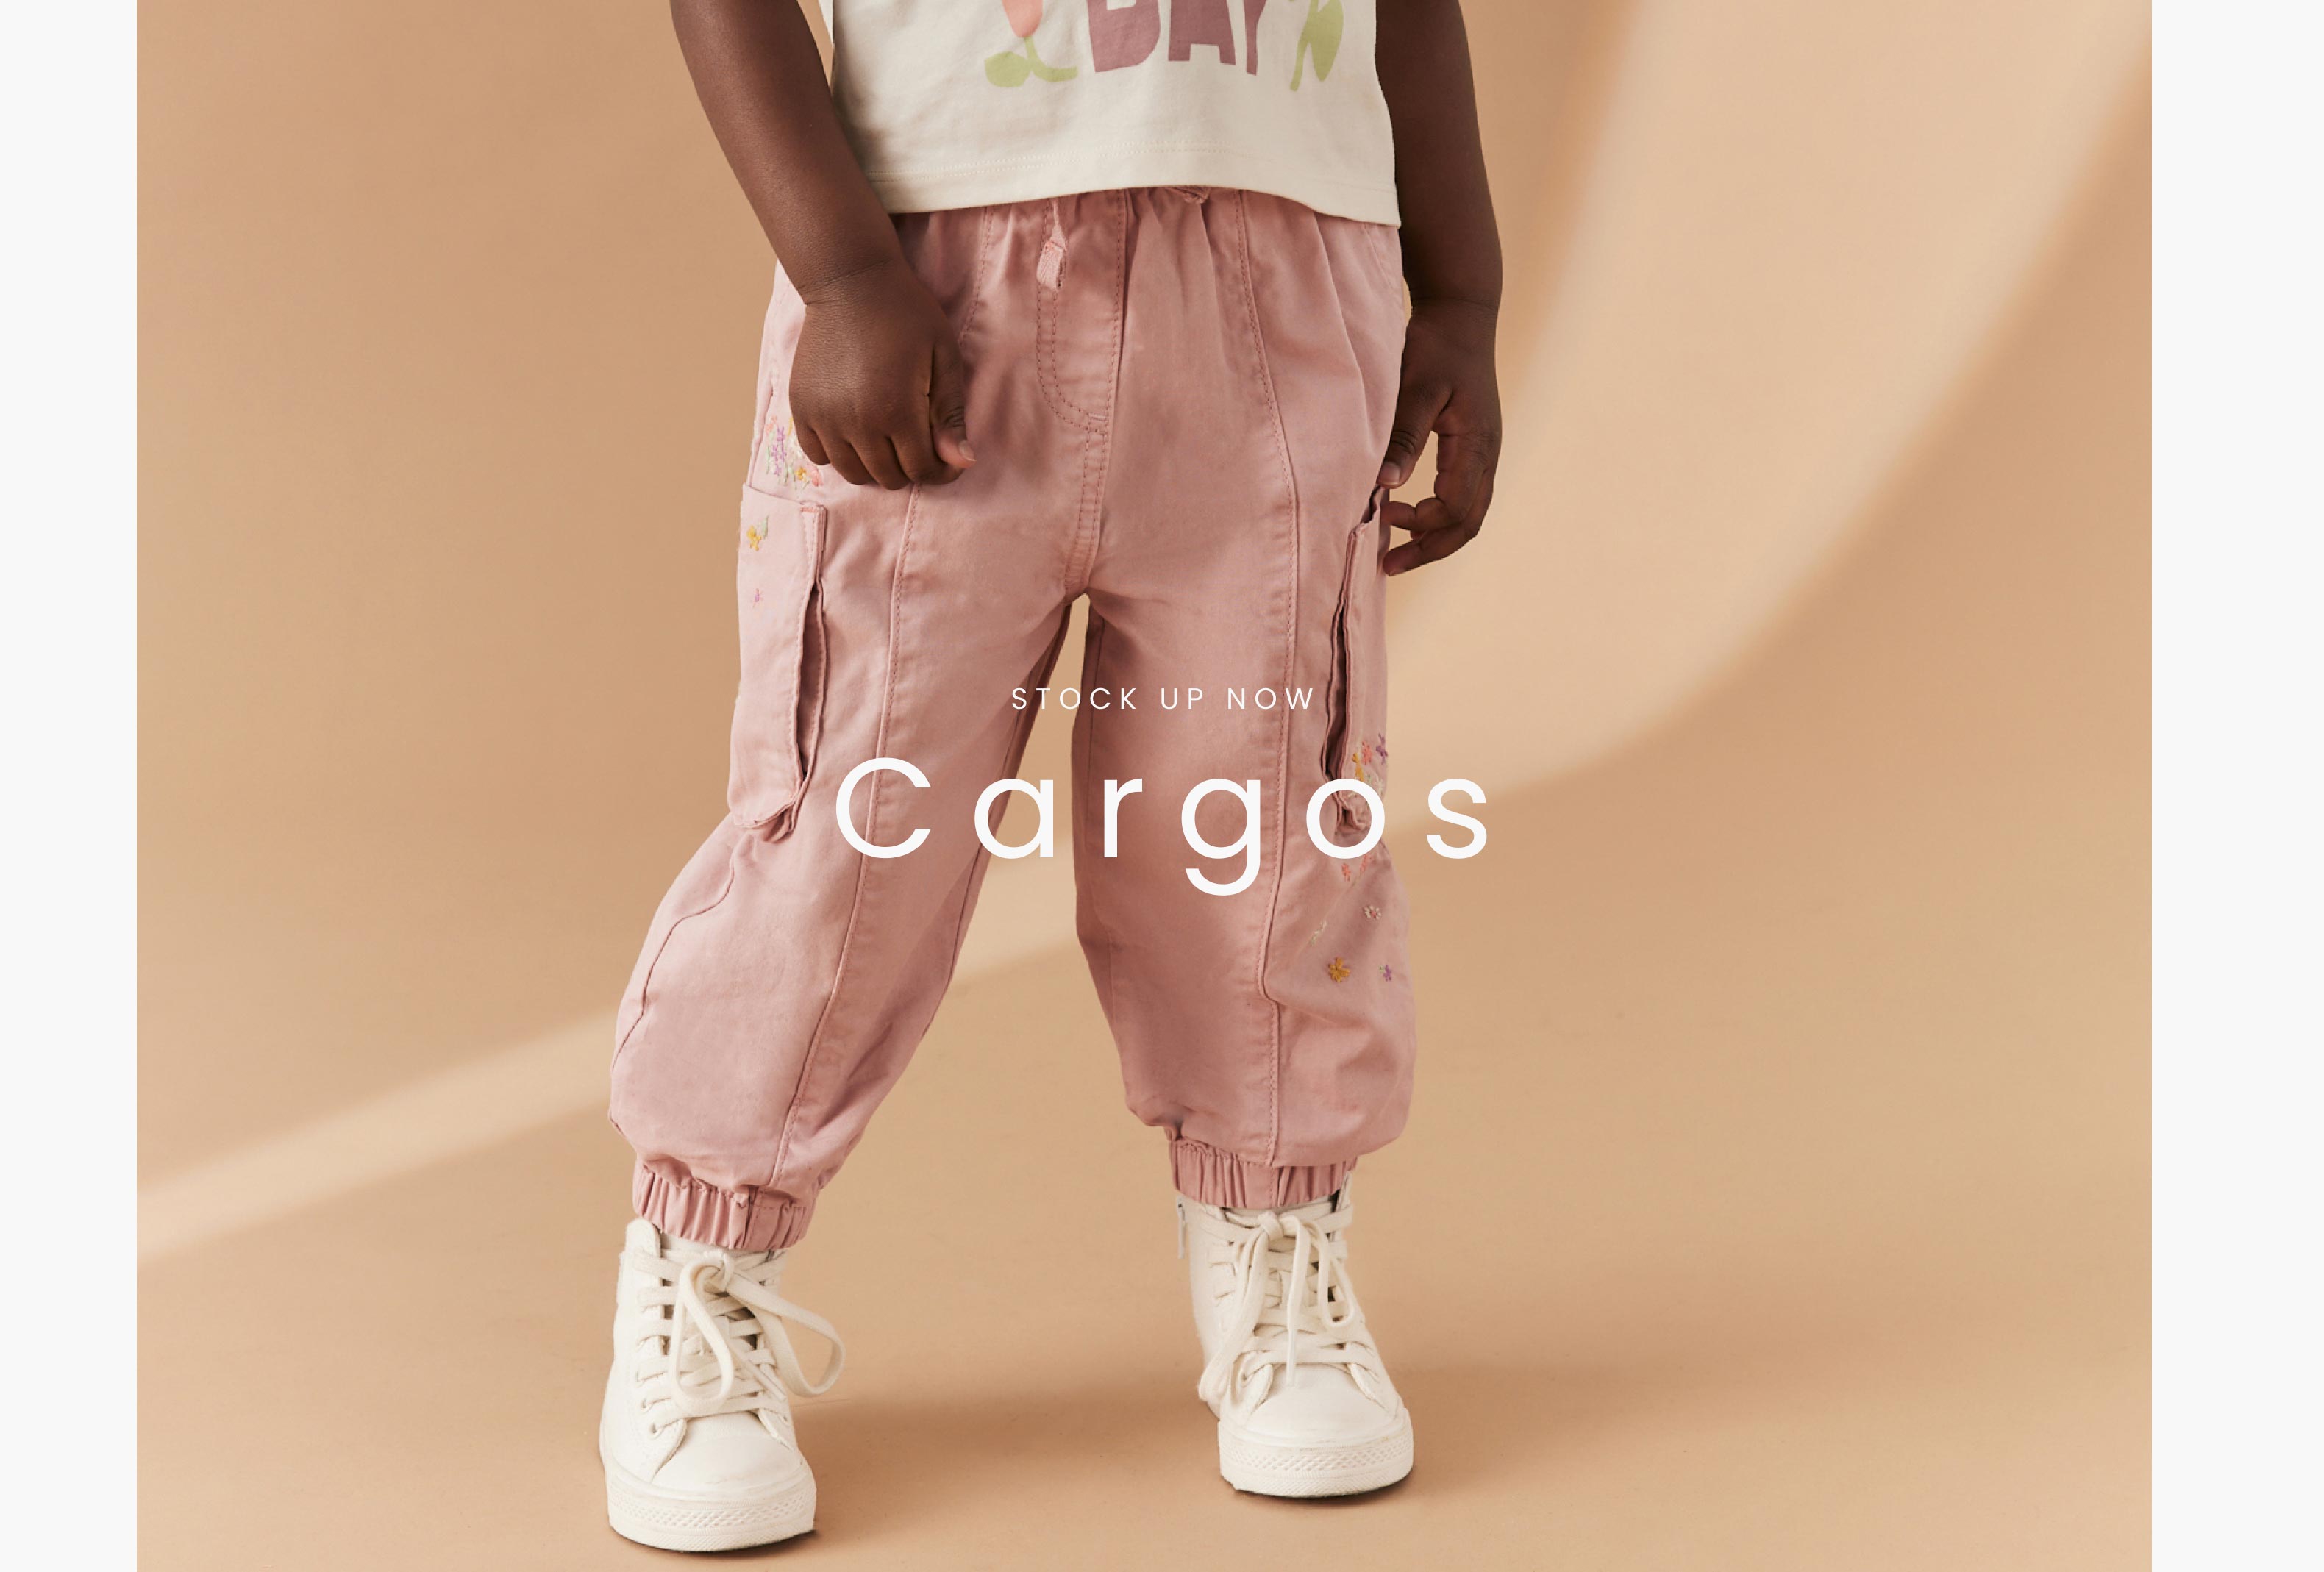 Stock up now - Cargos